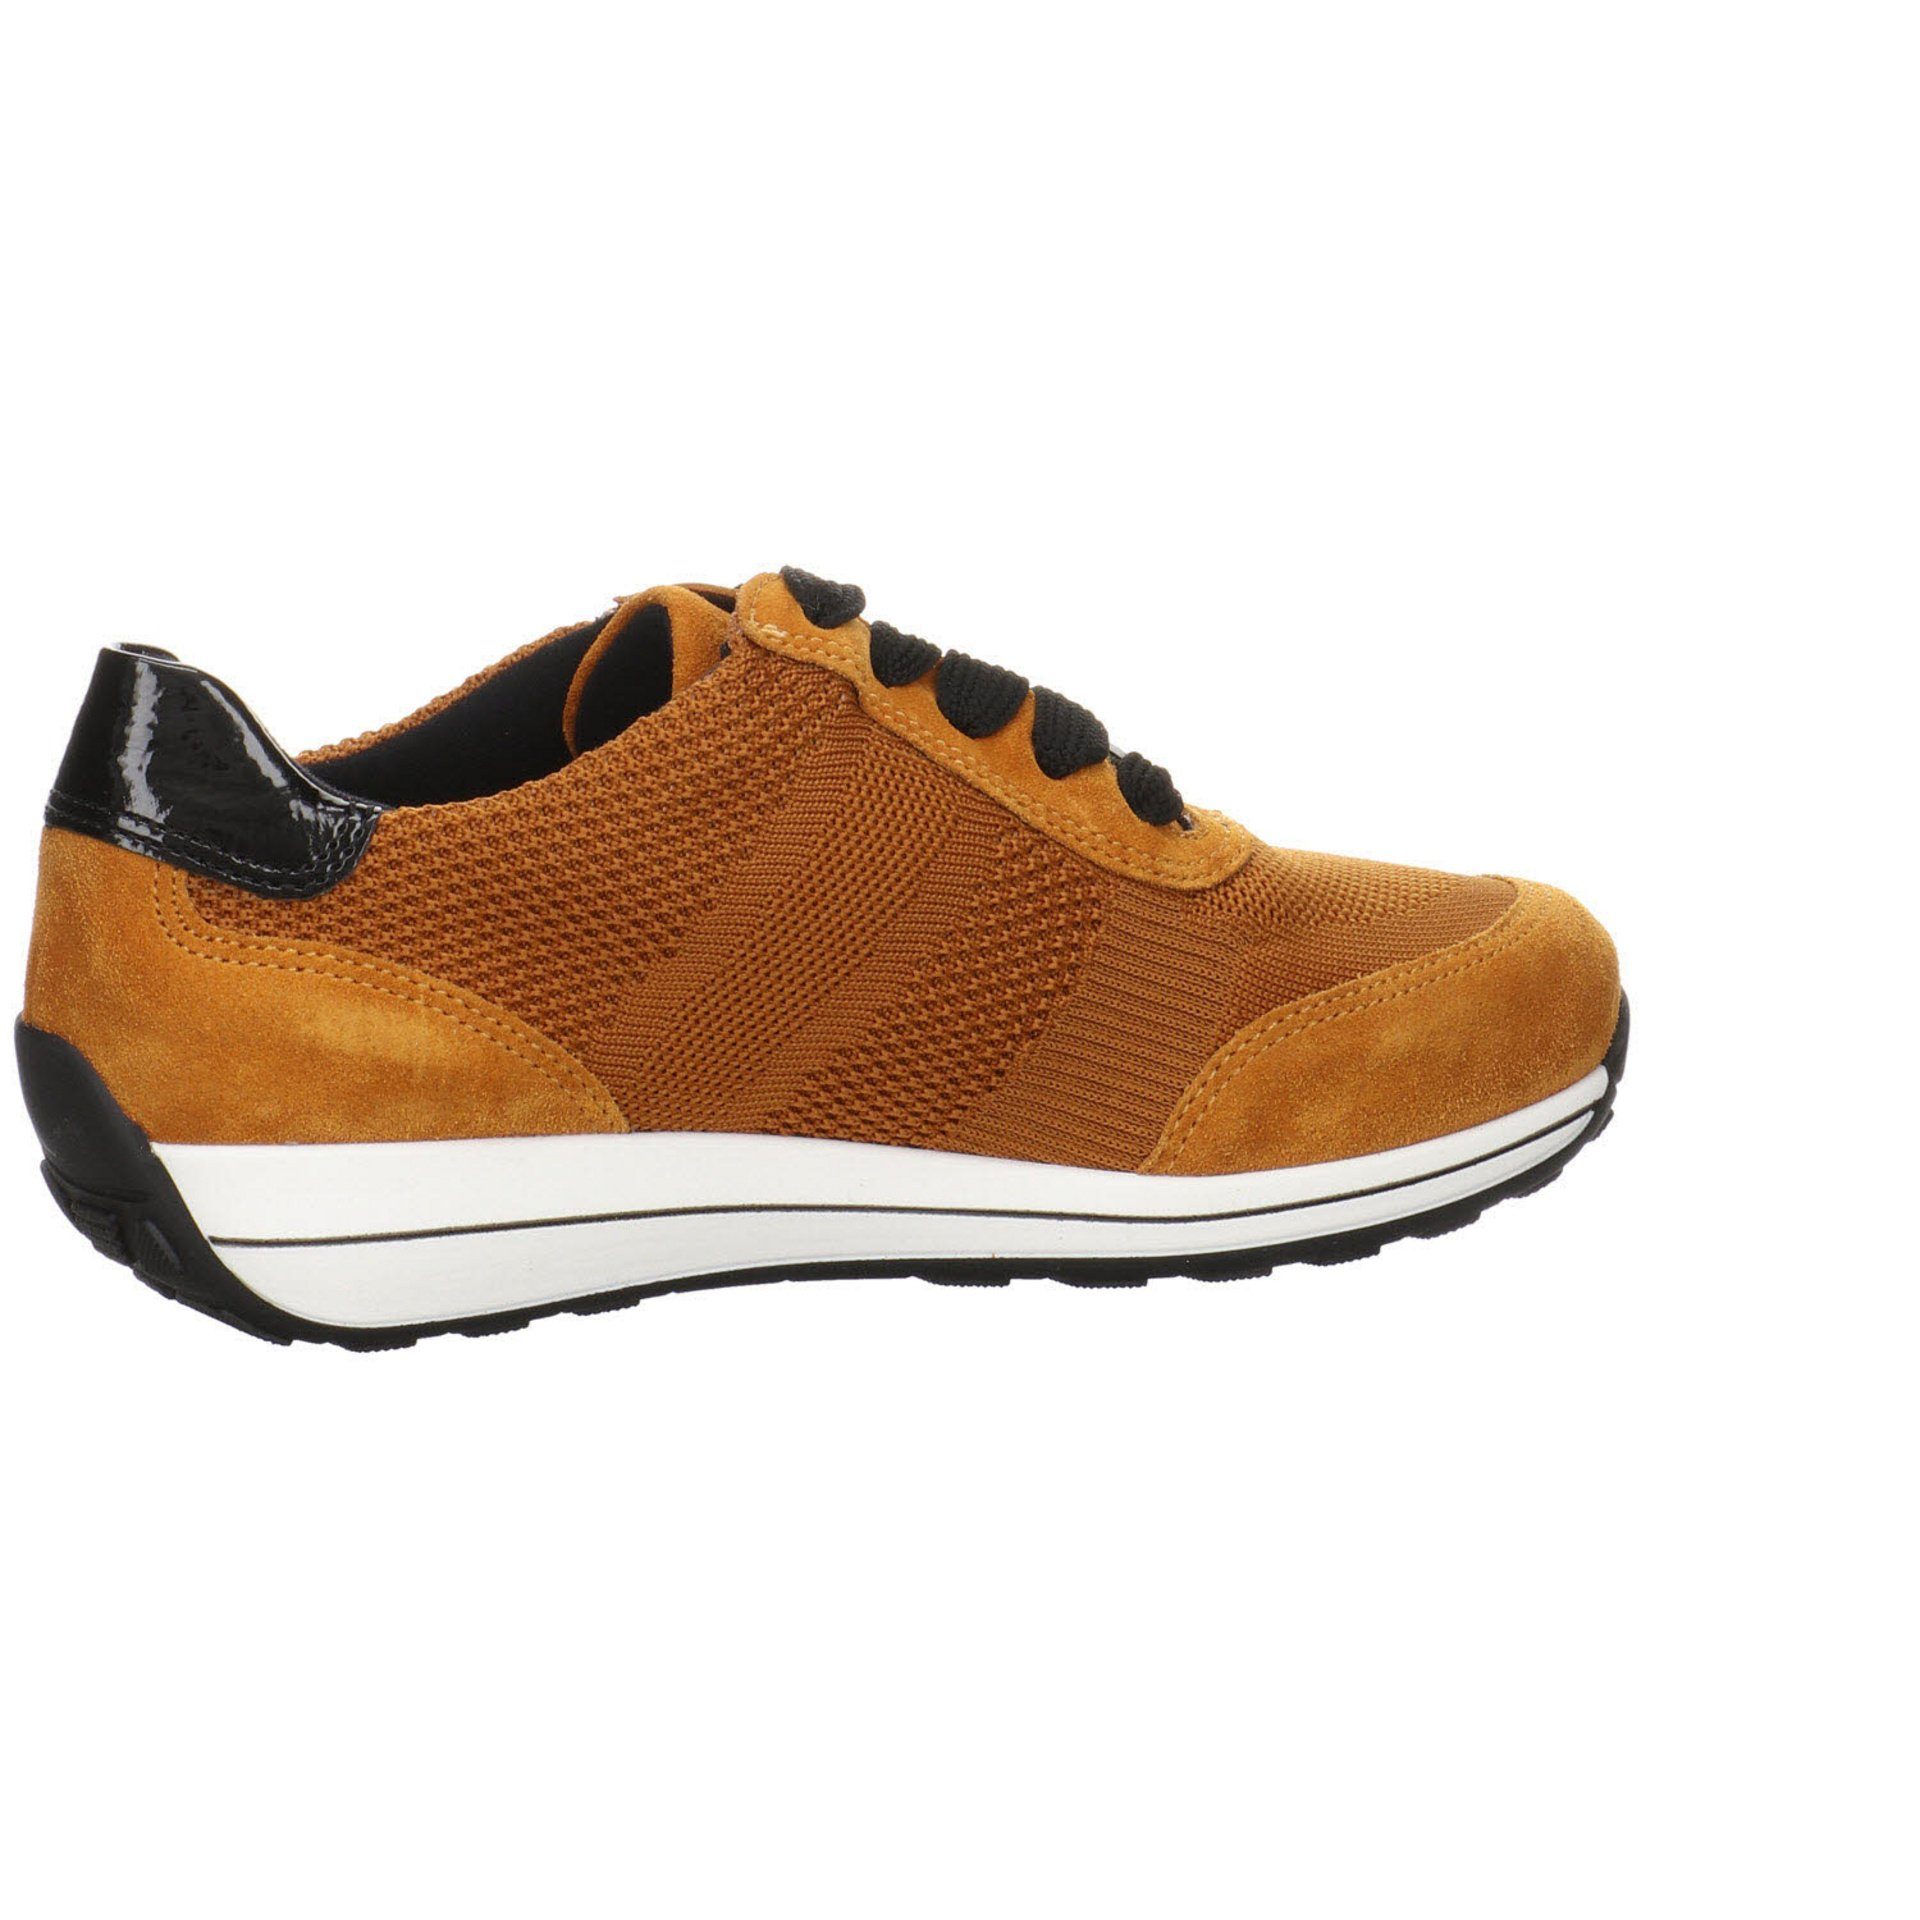 kombiniert Leder-/Textilkombination mit Ara Schnürschuh gelb Damen Schuhe Sneaker